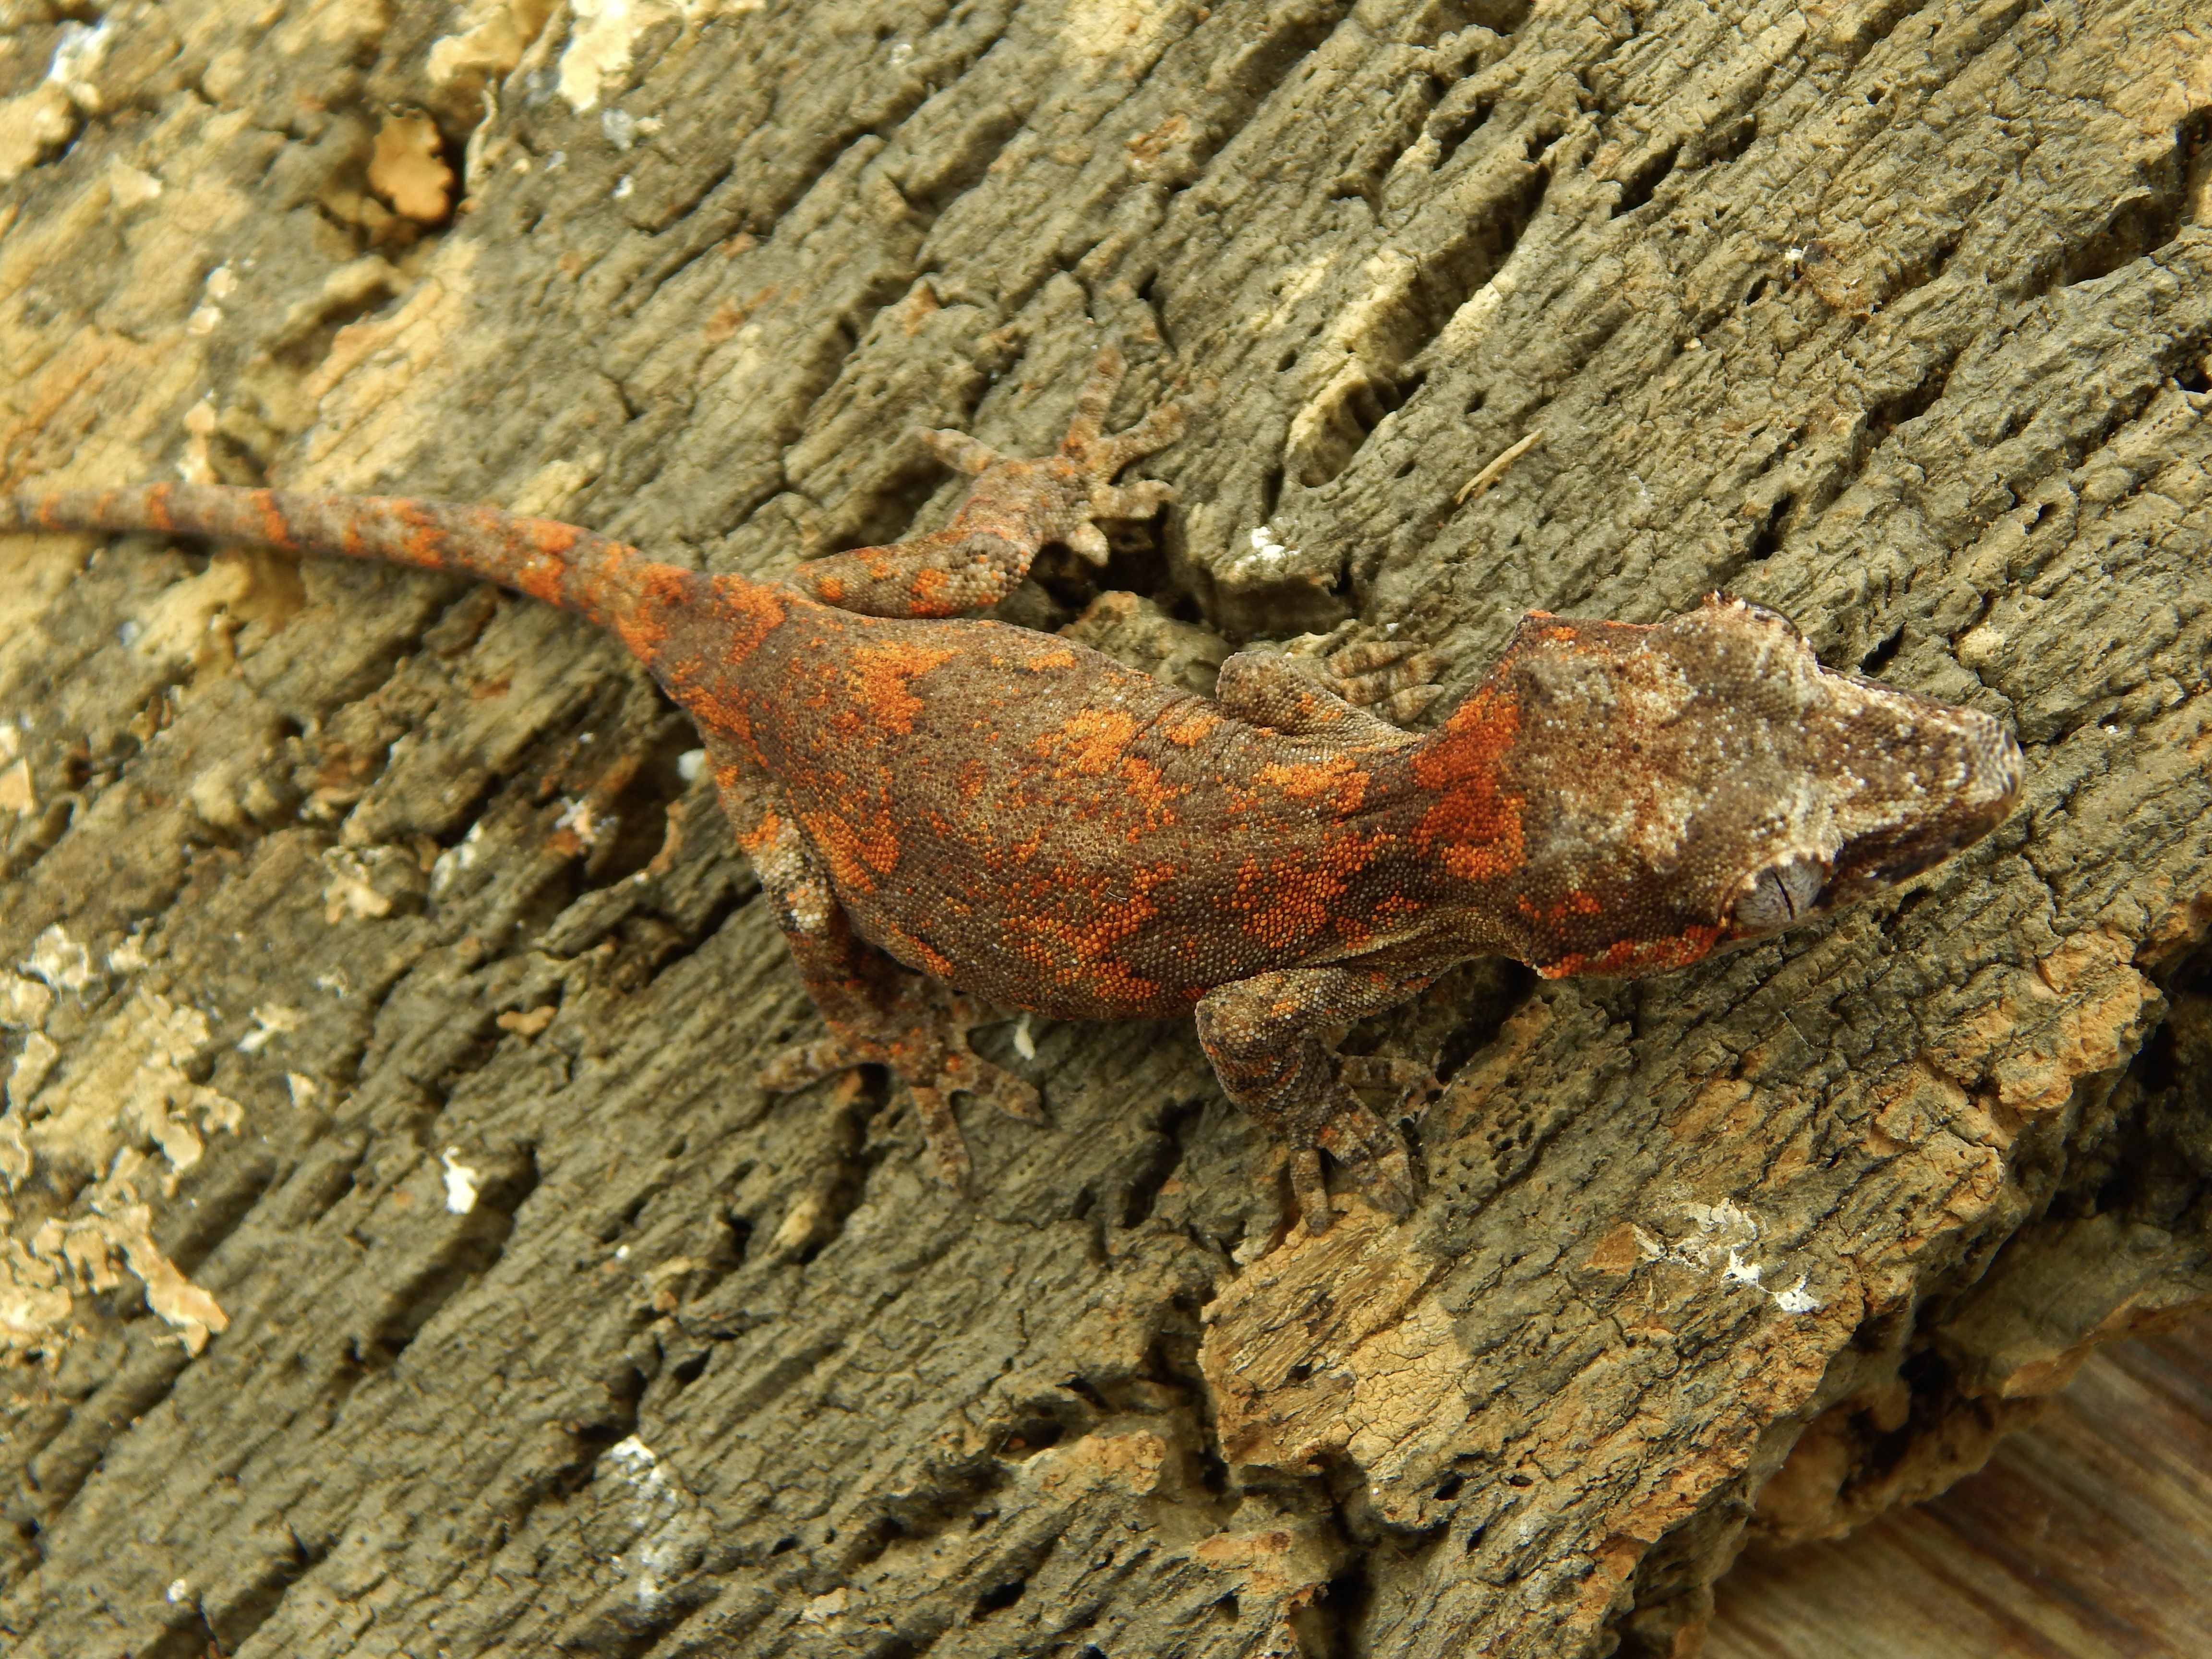 Super Blotch Gargoyle Gecko by Eclipse exotics